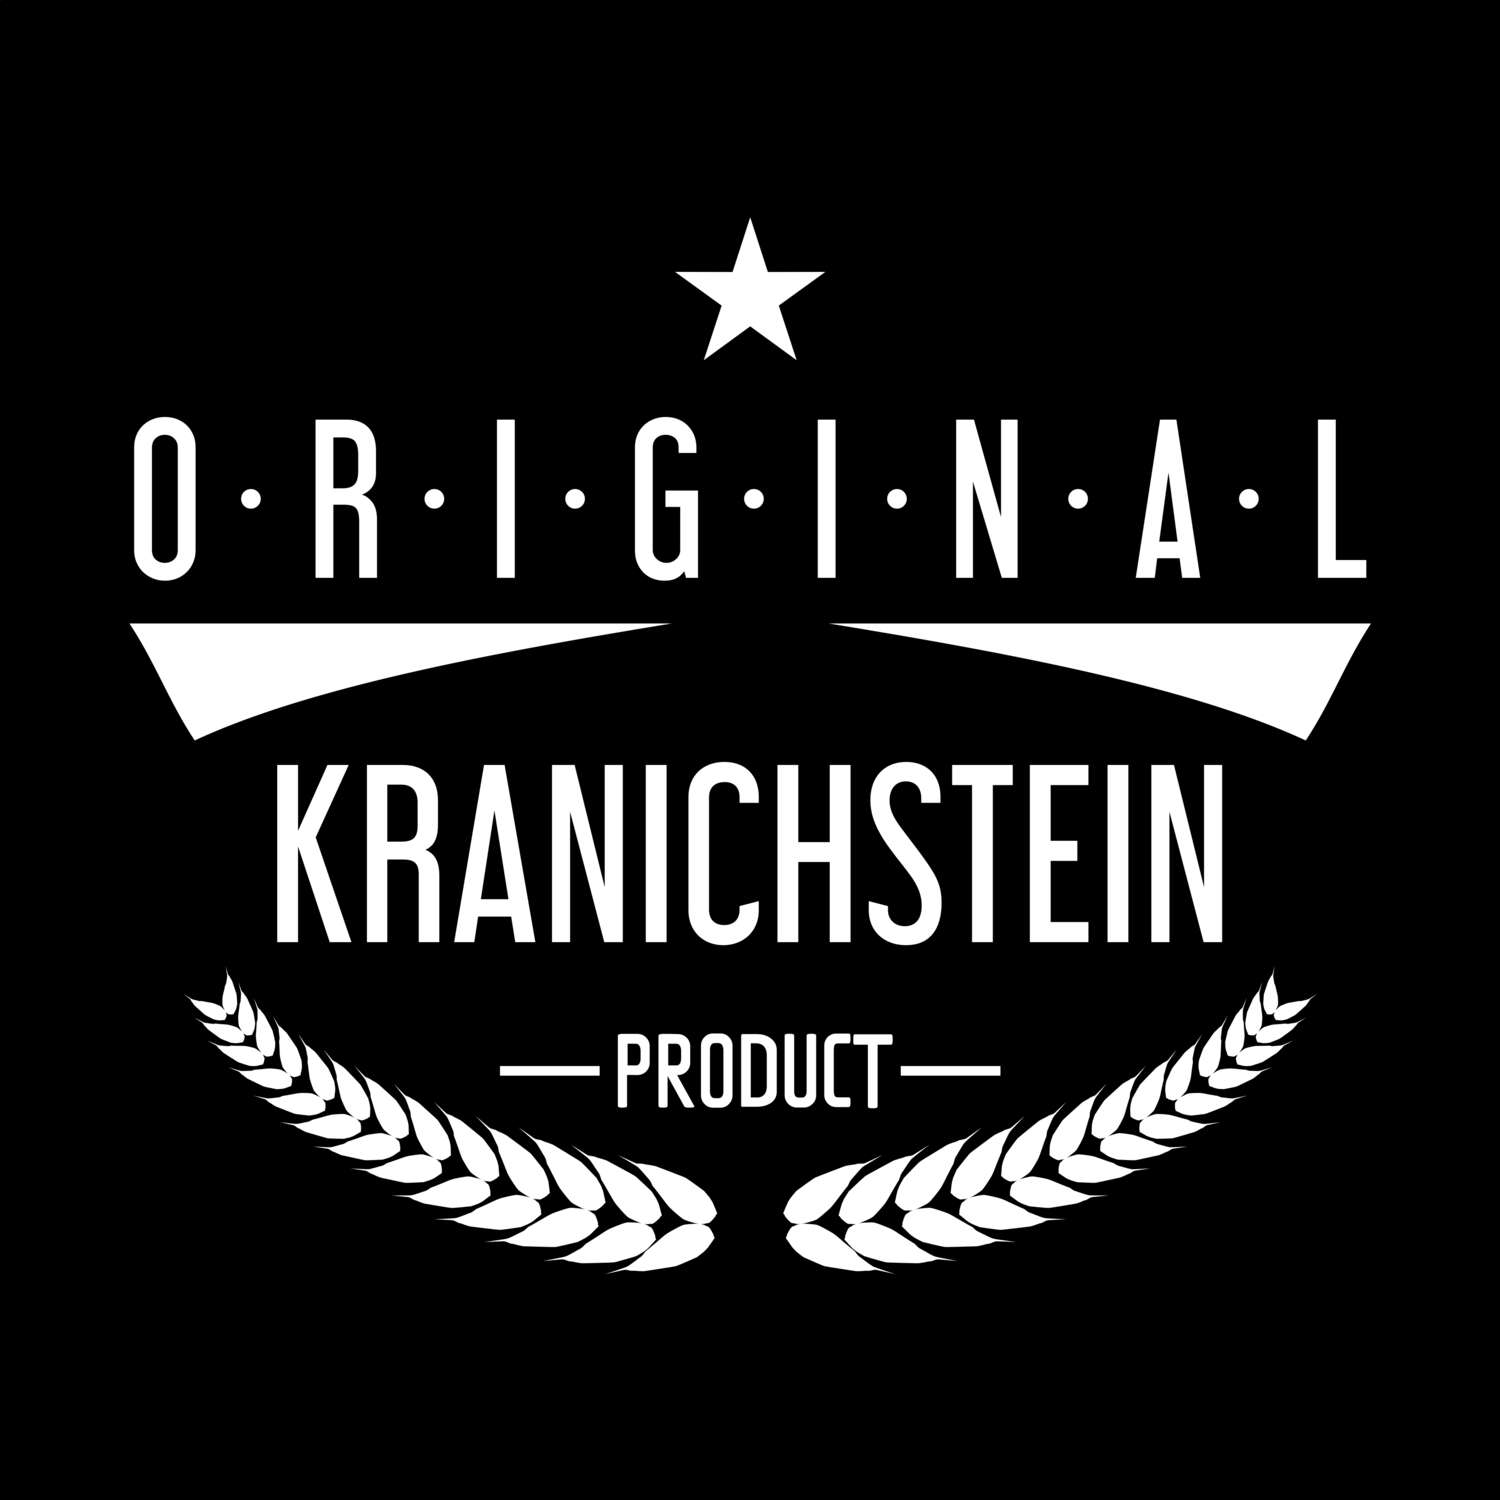 Kranichstein T-Shirt »Original Product«